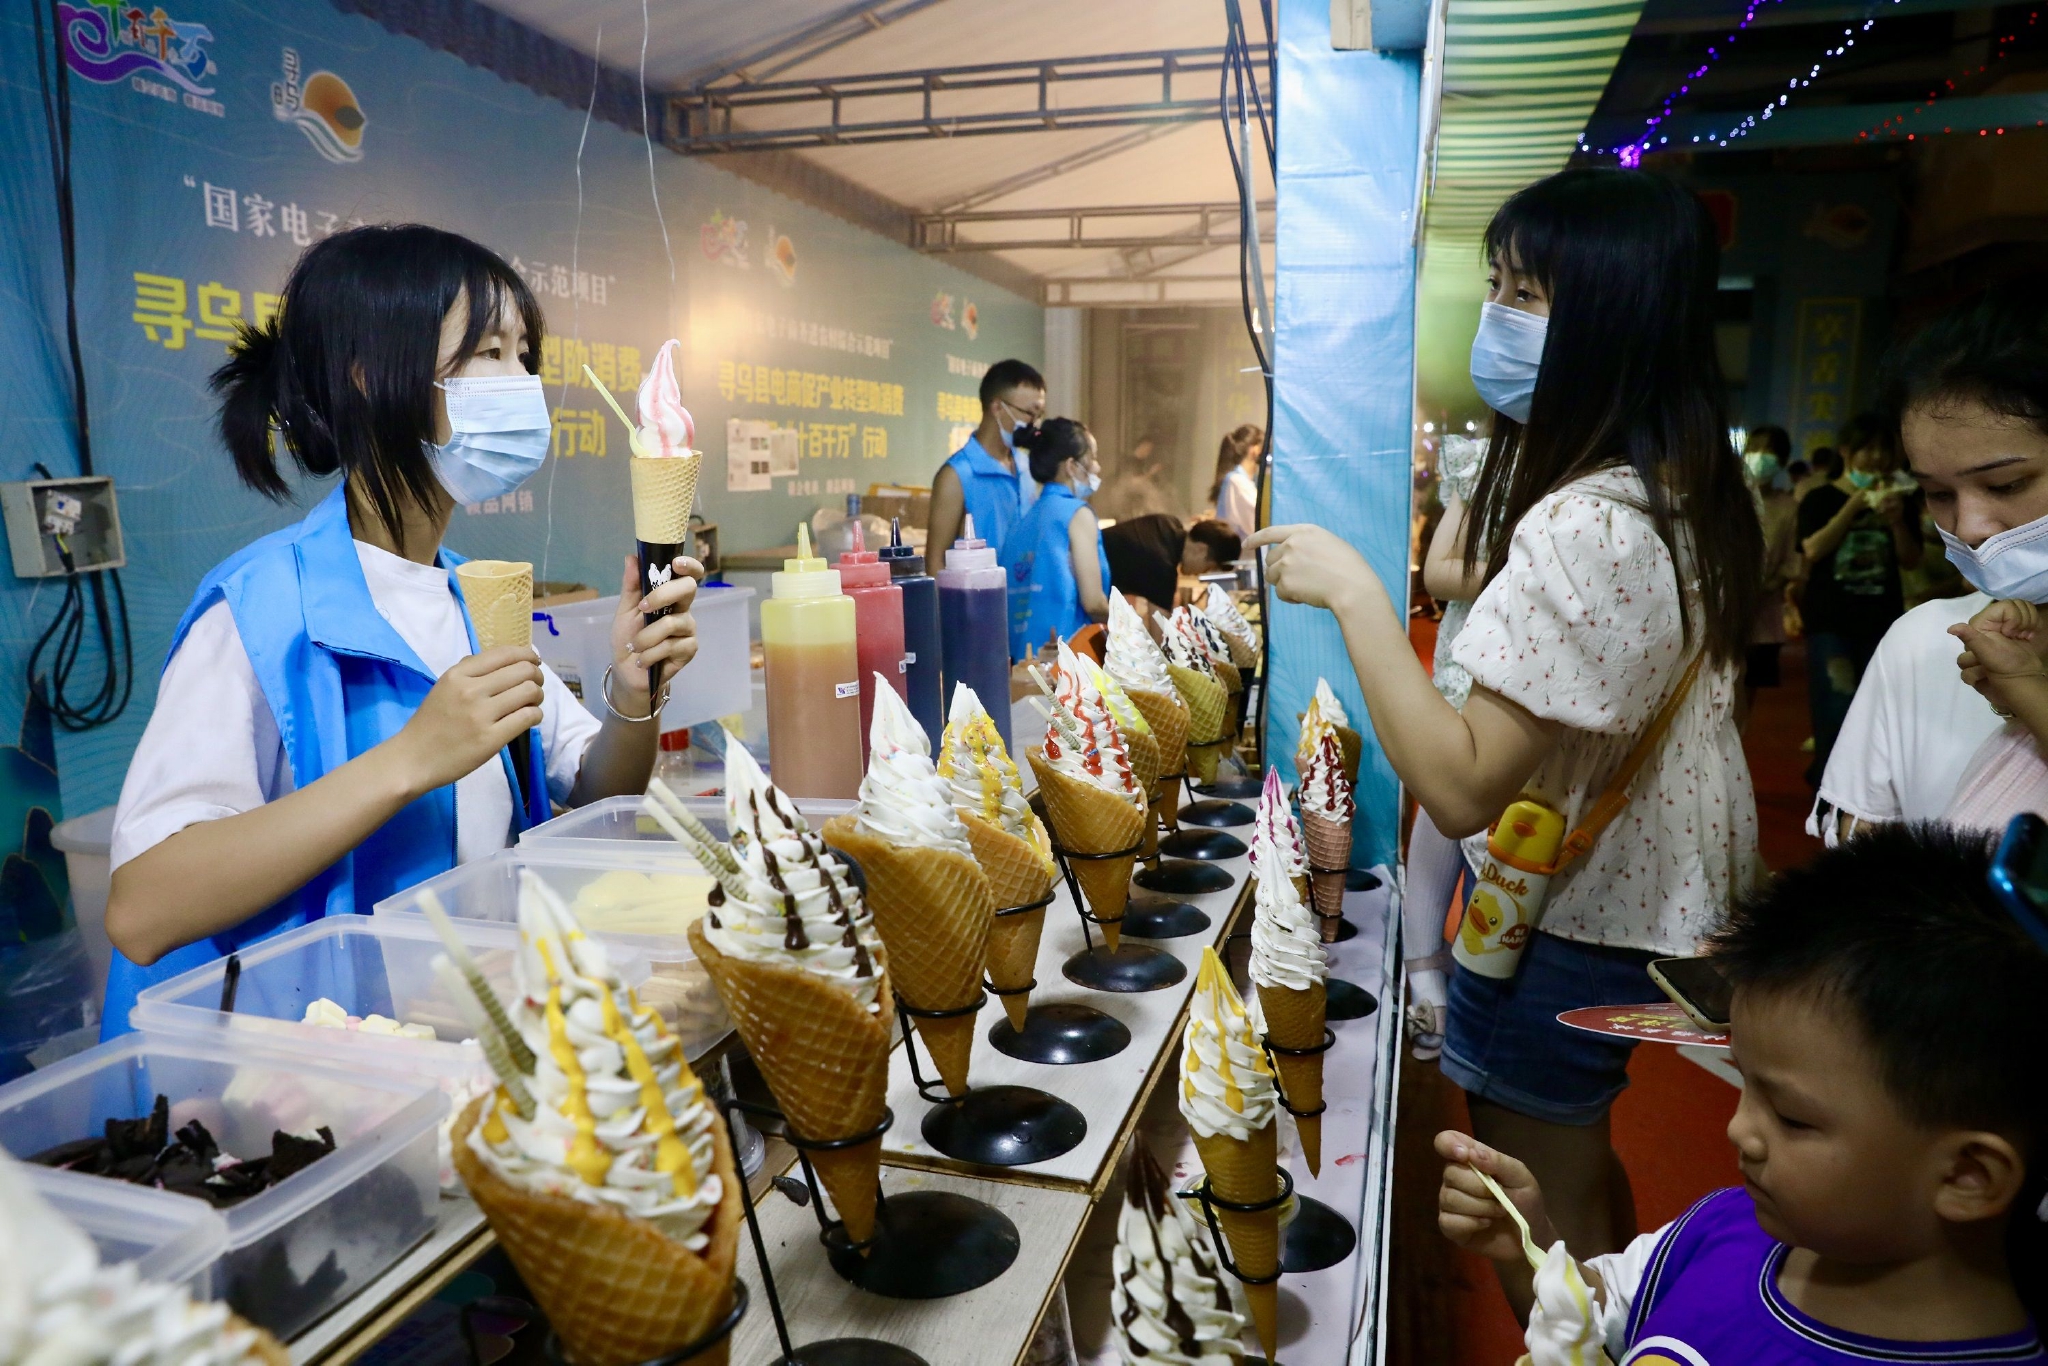 8月27日晚，在江西省寻乌县国际商贸城，游客在活动现场购买冰淇淋。中国日报记者 朱兴鑫 摄